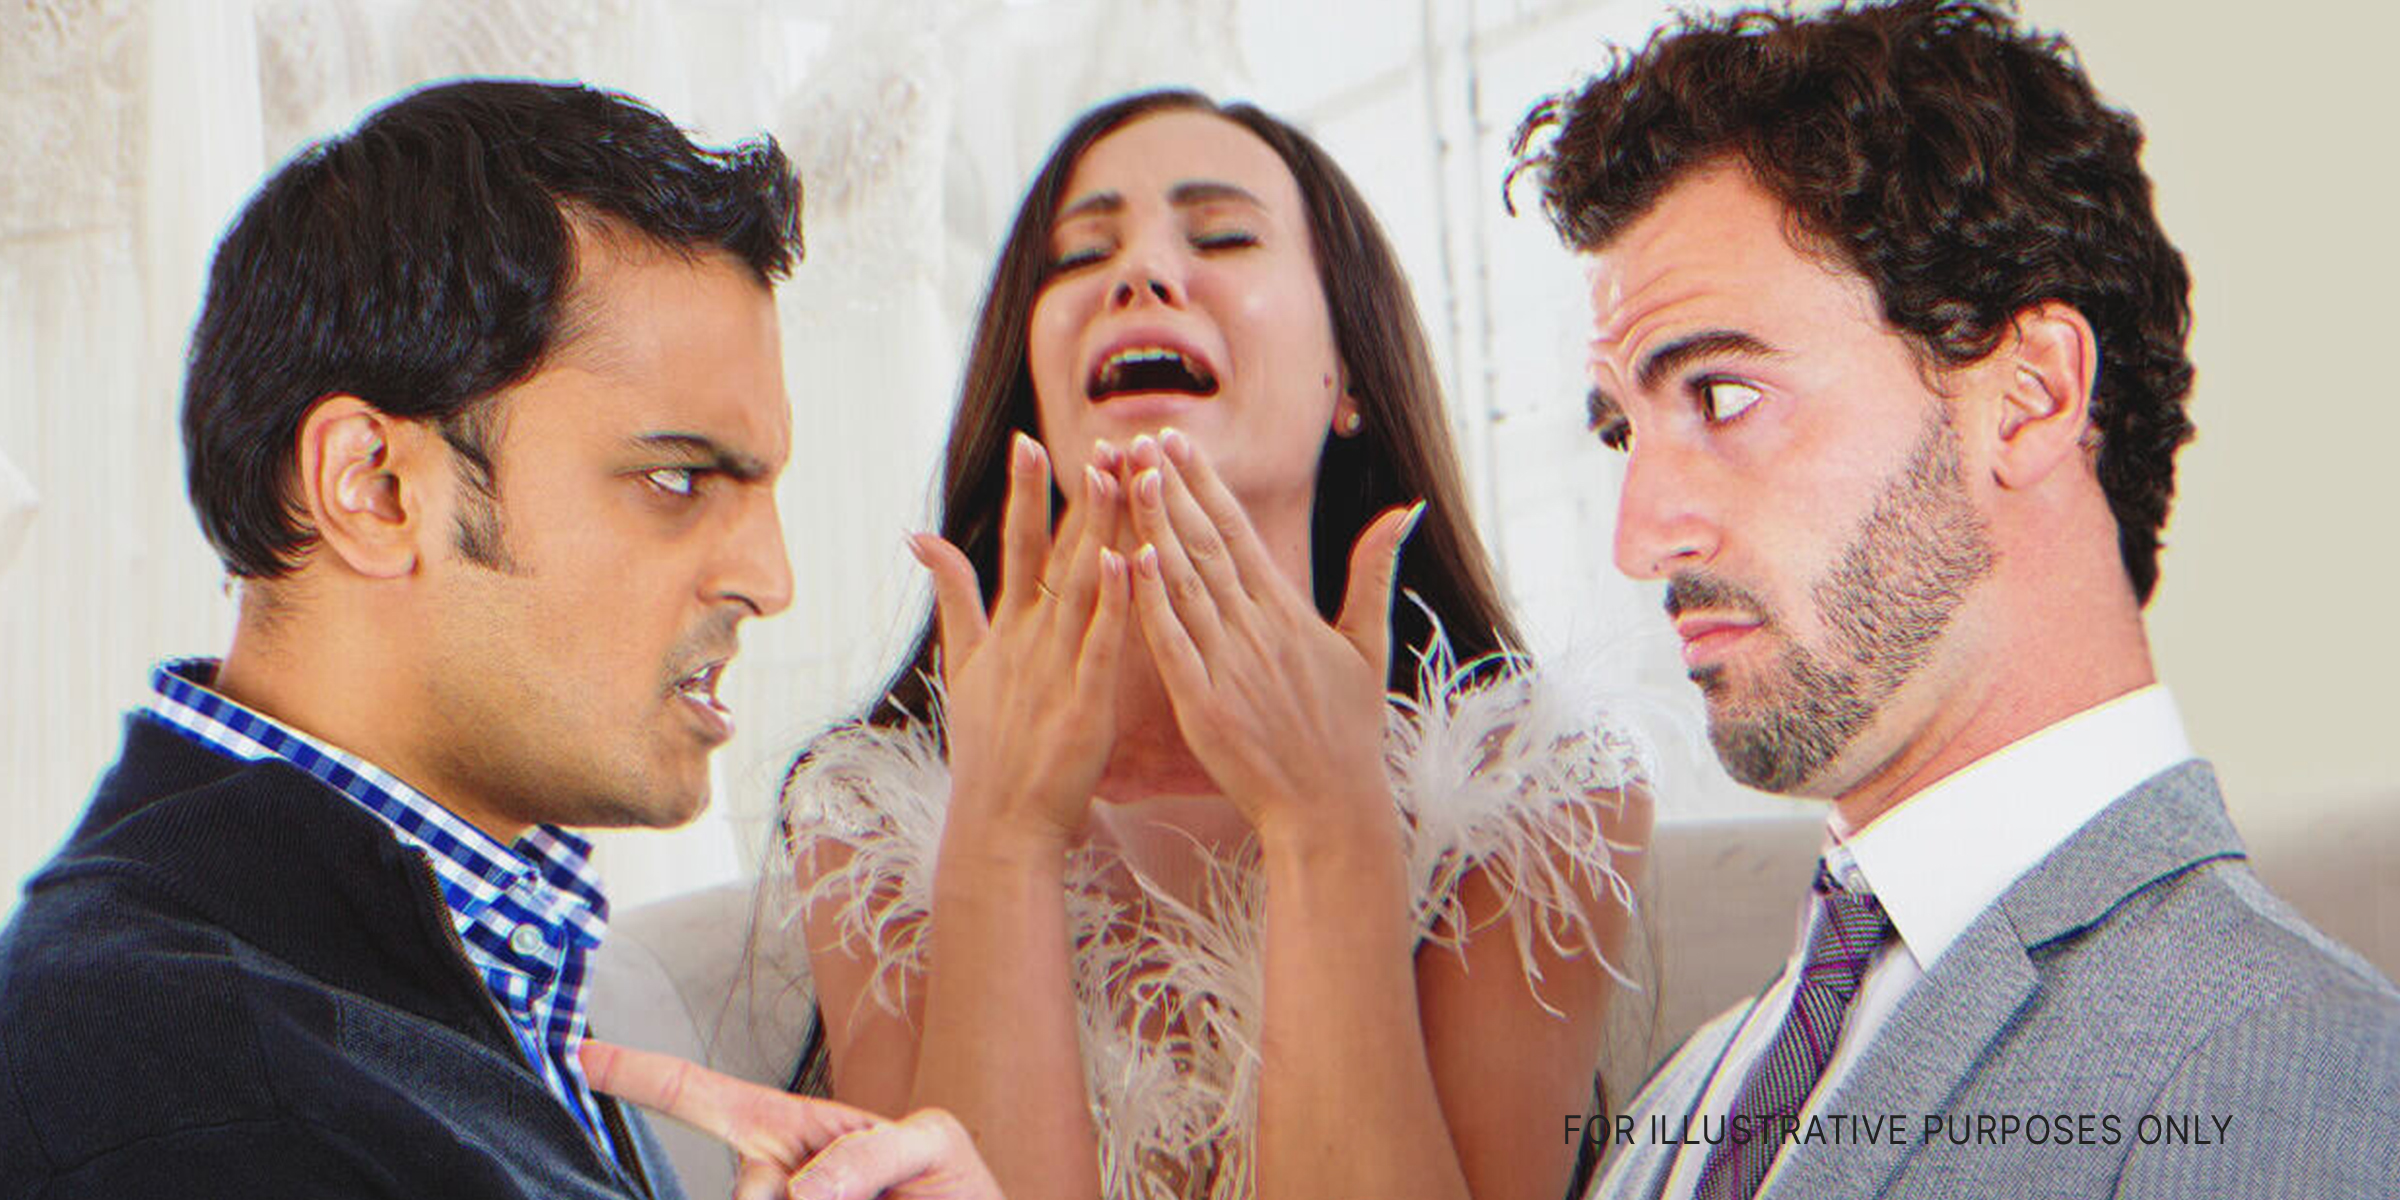 Spannungen zwischen Brüdern bei der Hochzeit des einen | Quelle: Shutterstock